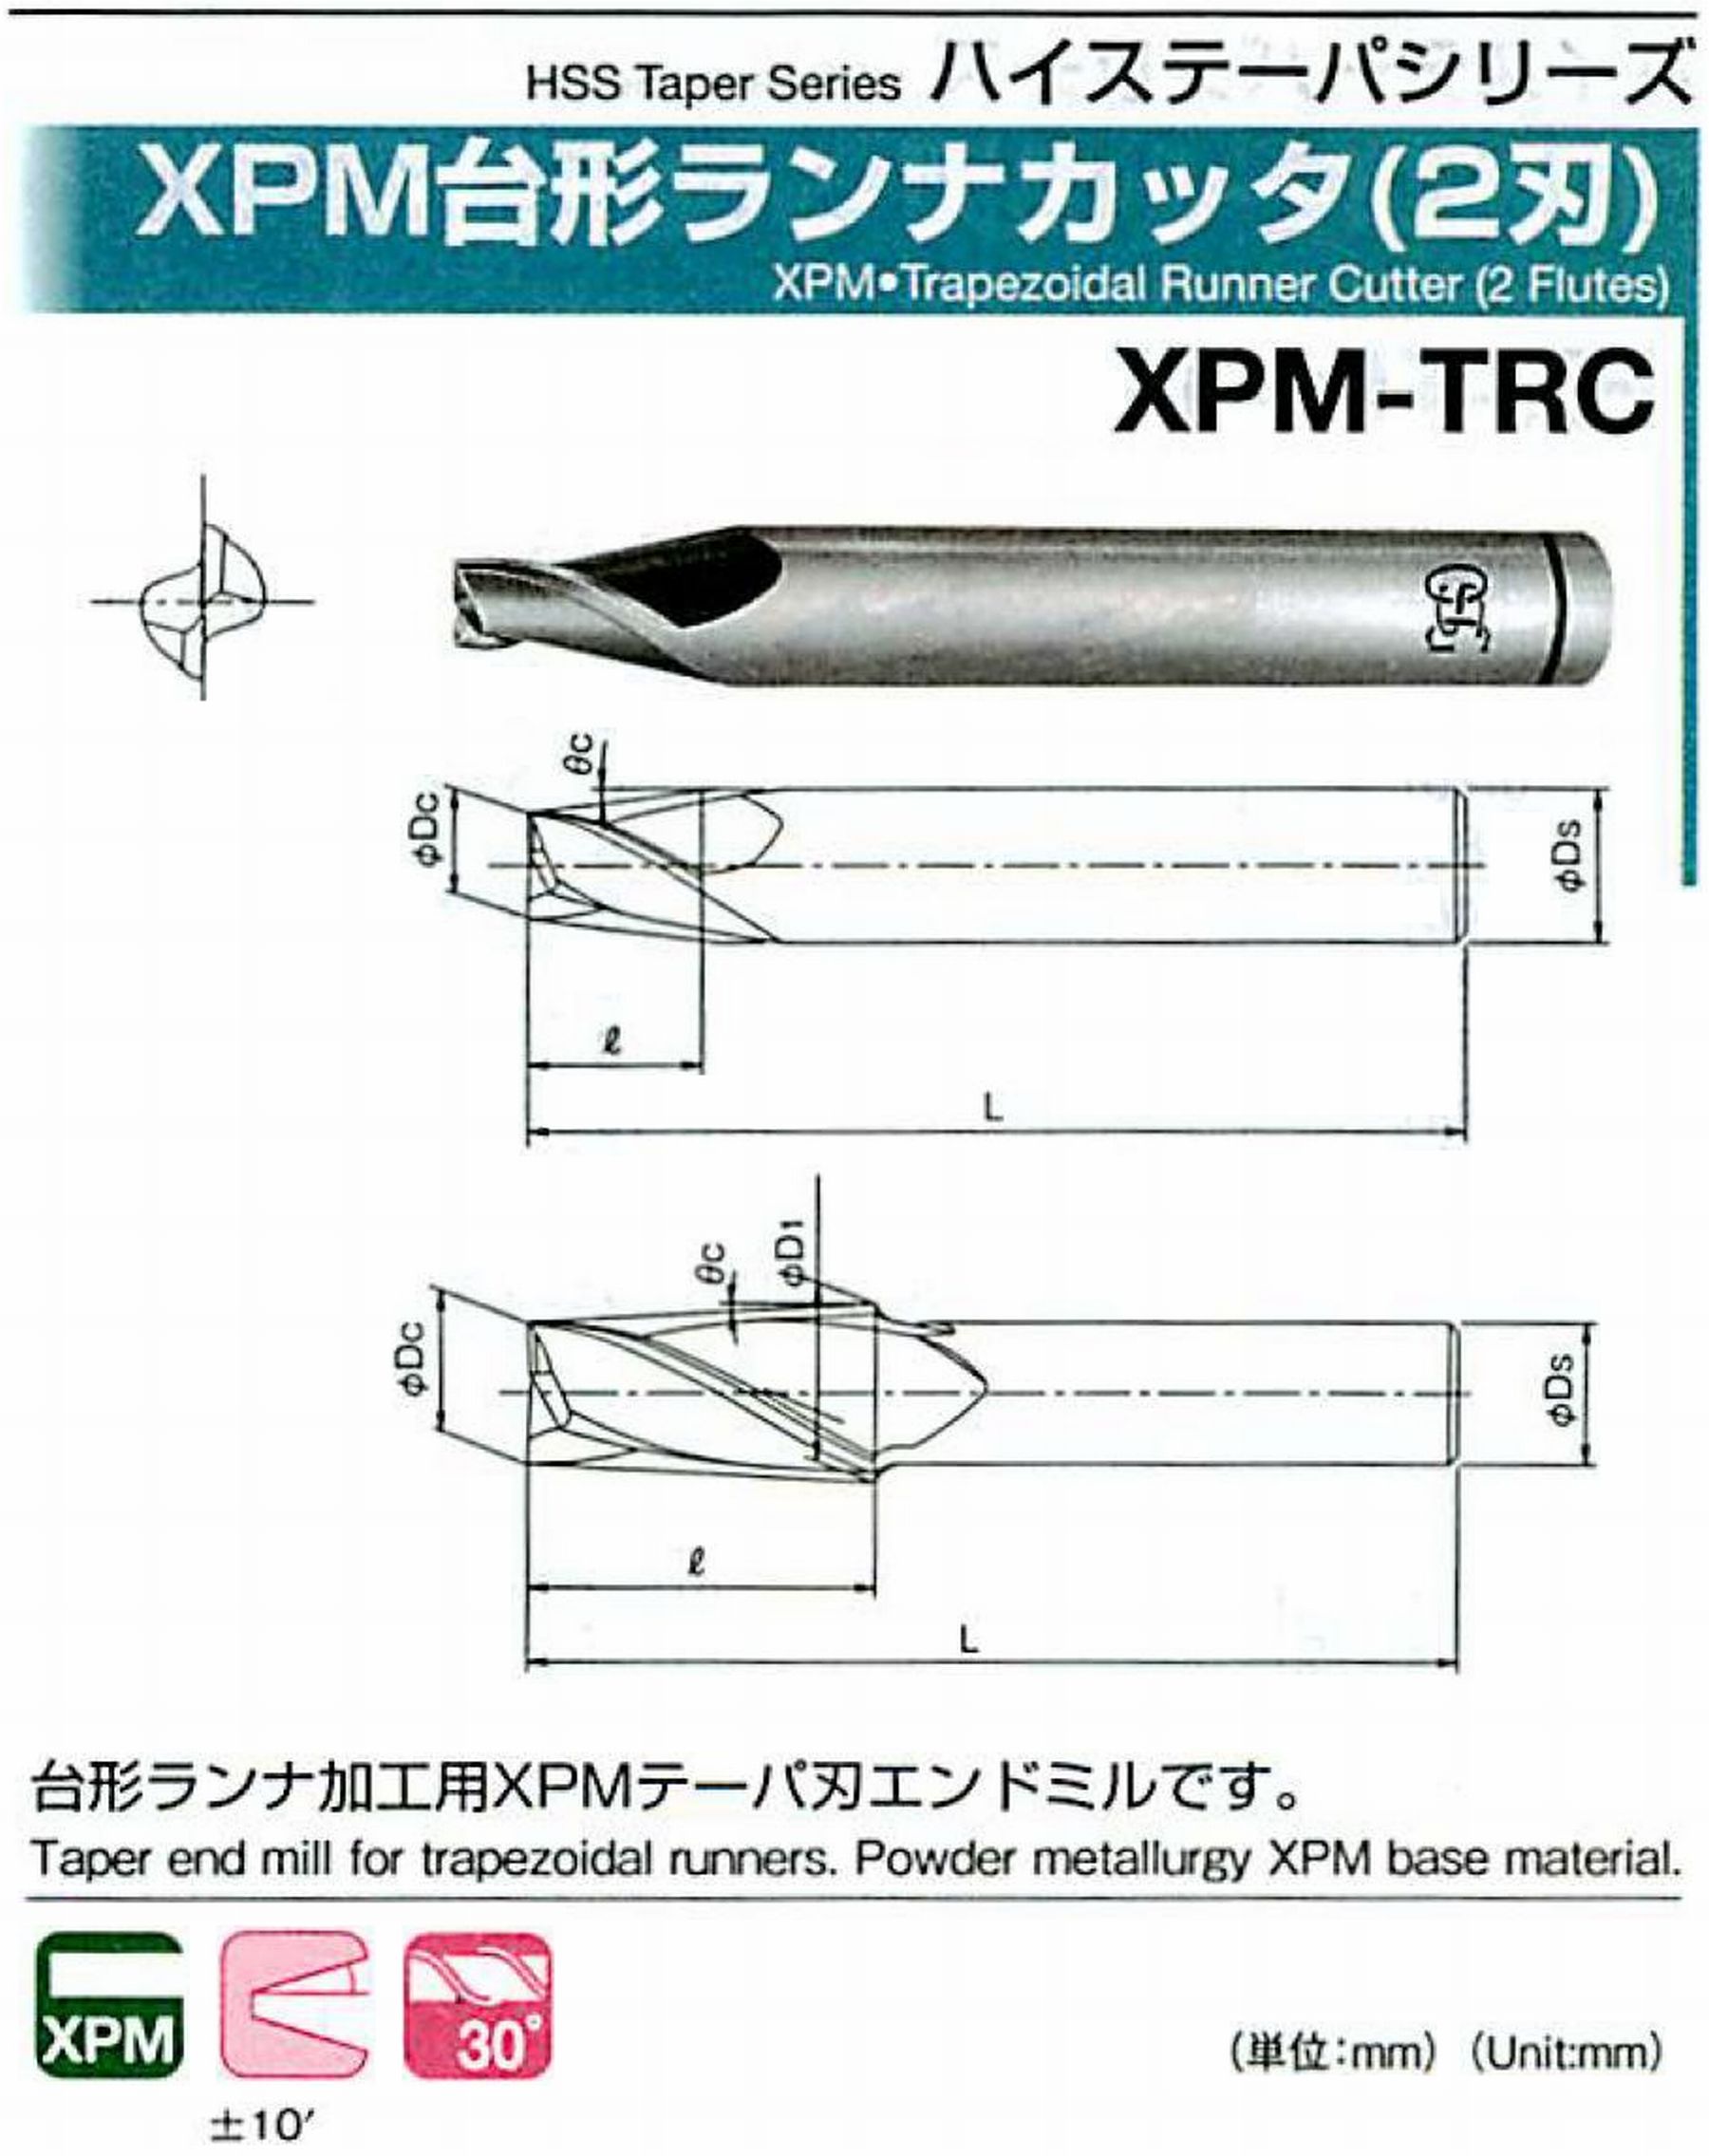 オーエスジー/OSG XPM台形ランナカッタ(2刃) XPM-TRC 外径×刃部テーパ半角4×12° 全長60 刃長8 シャンク径8mm